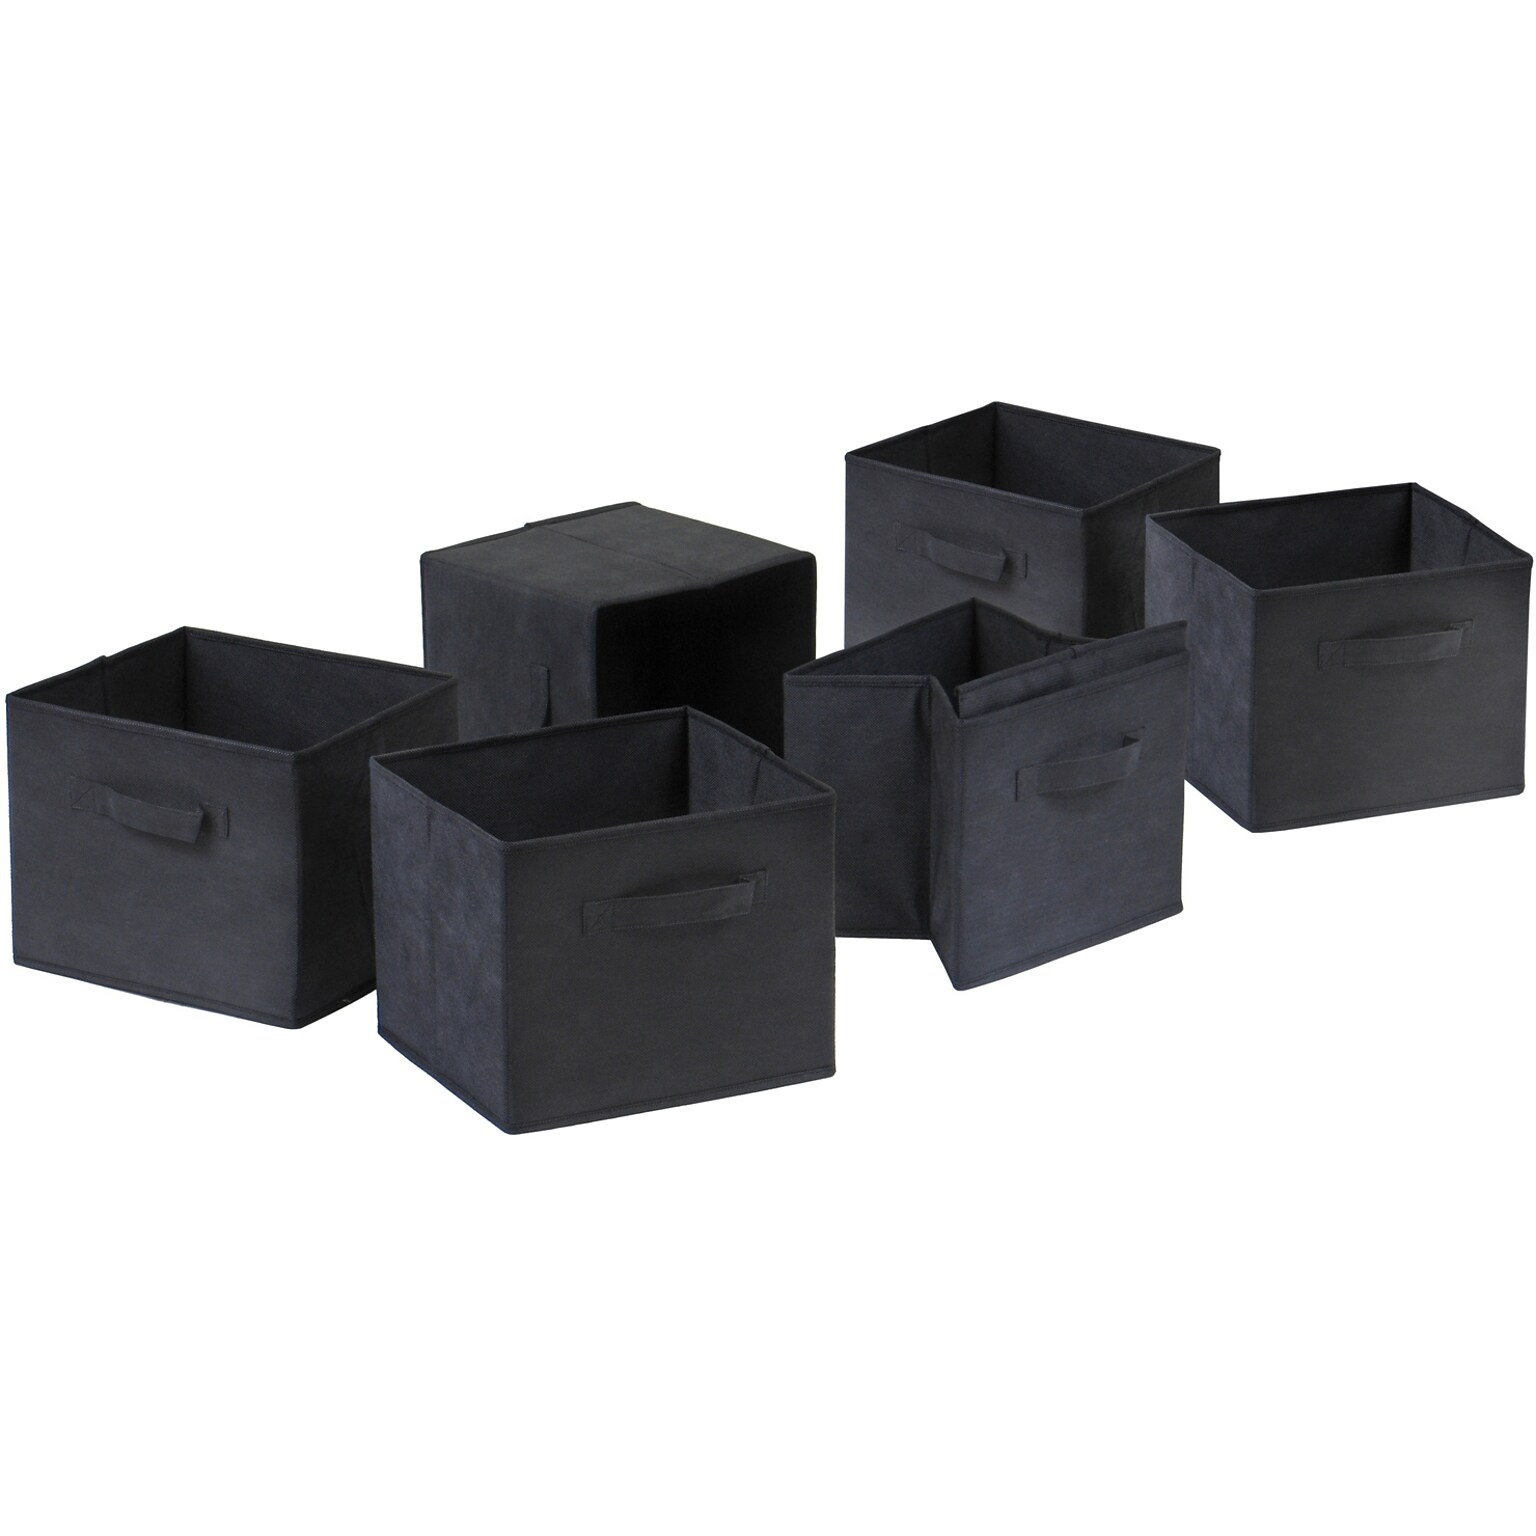 Winsome Capri Foldable Fabric Basket, Black, 6/Pack